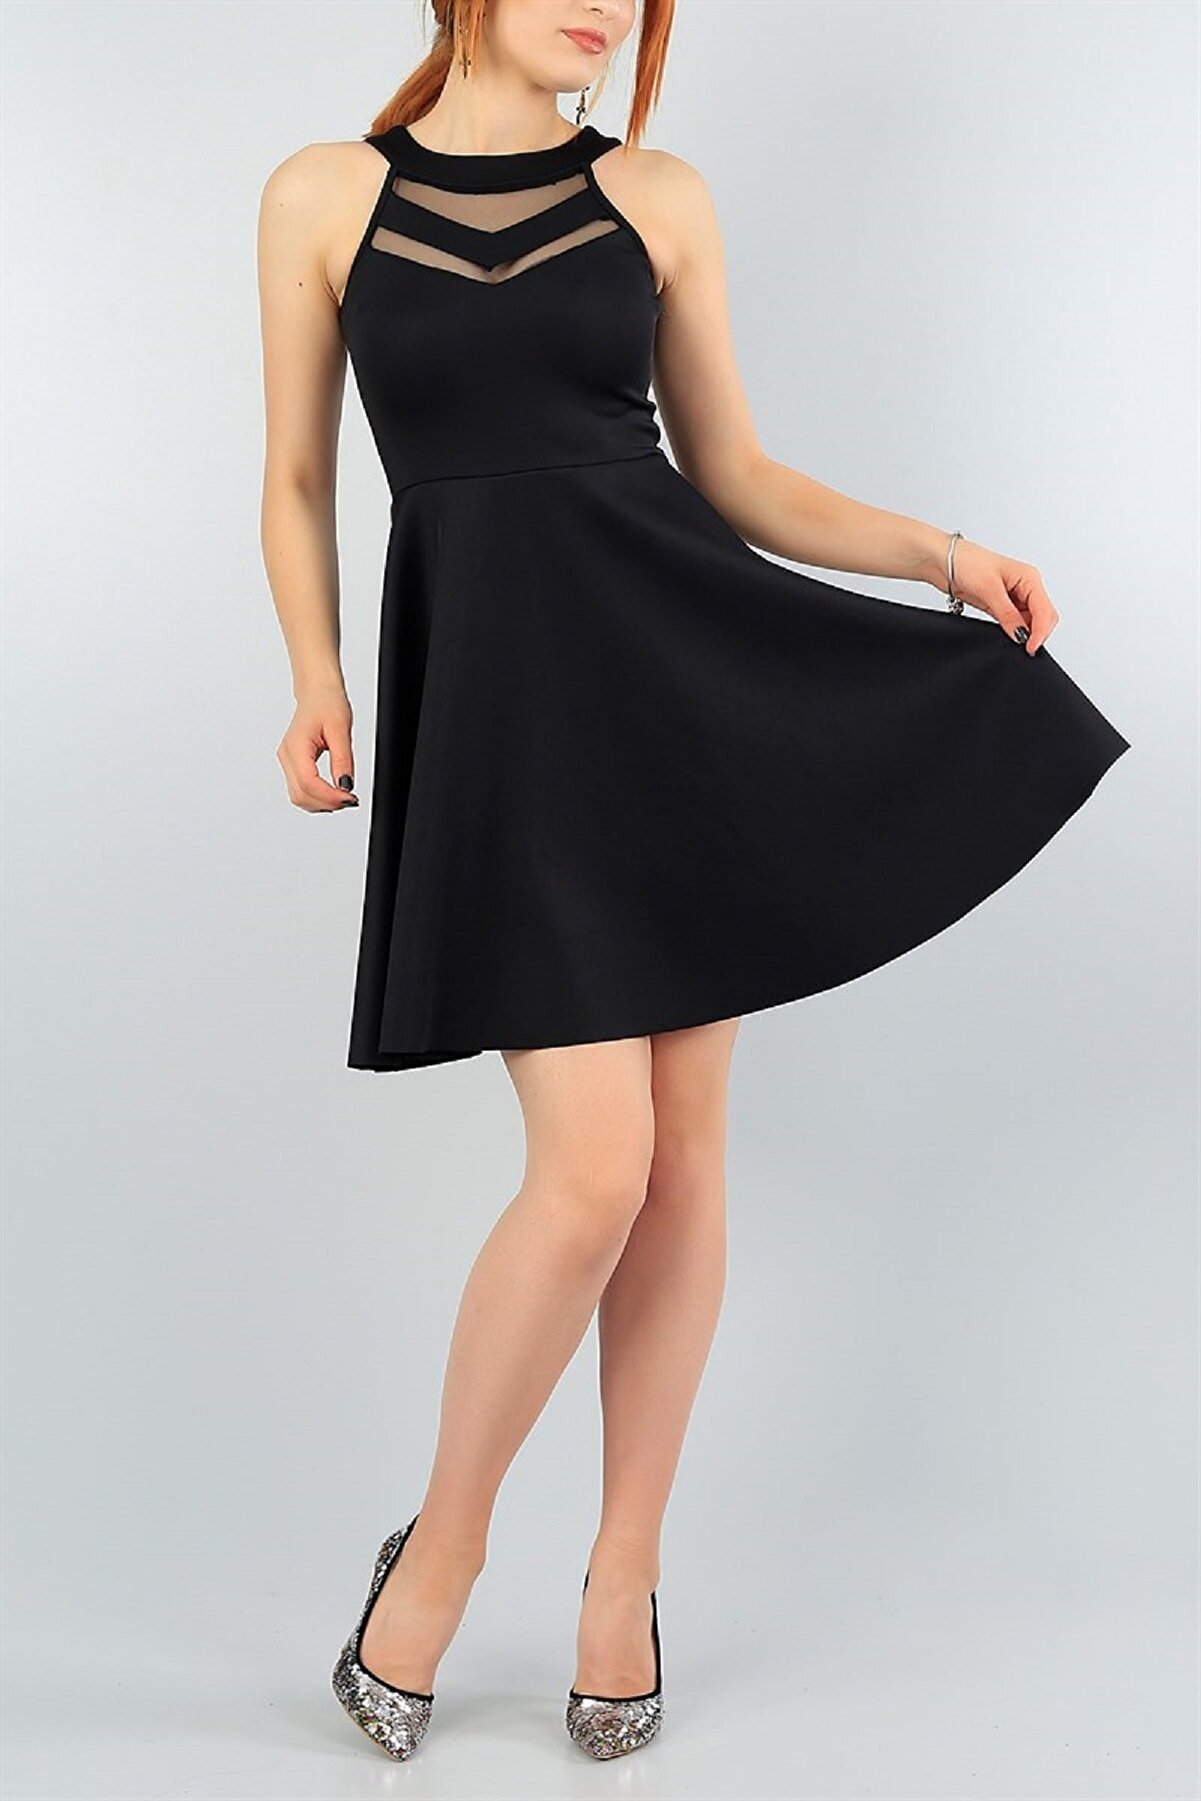 lovebox Esnek Kumaş Transparan Detay Siyah Abiye Elbise Kına Nişan Mezuniyet Elbisesi 2222